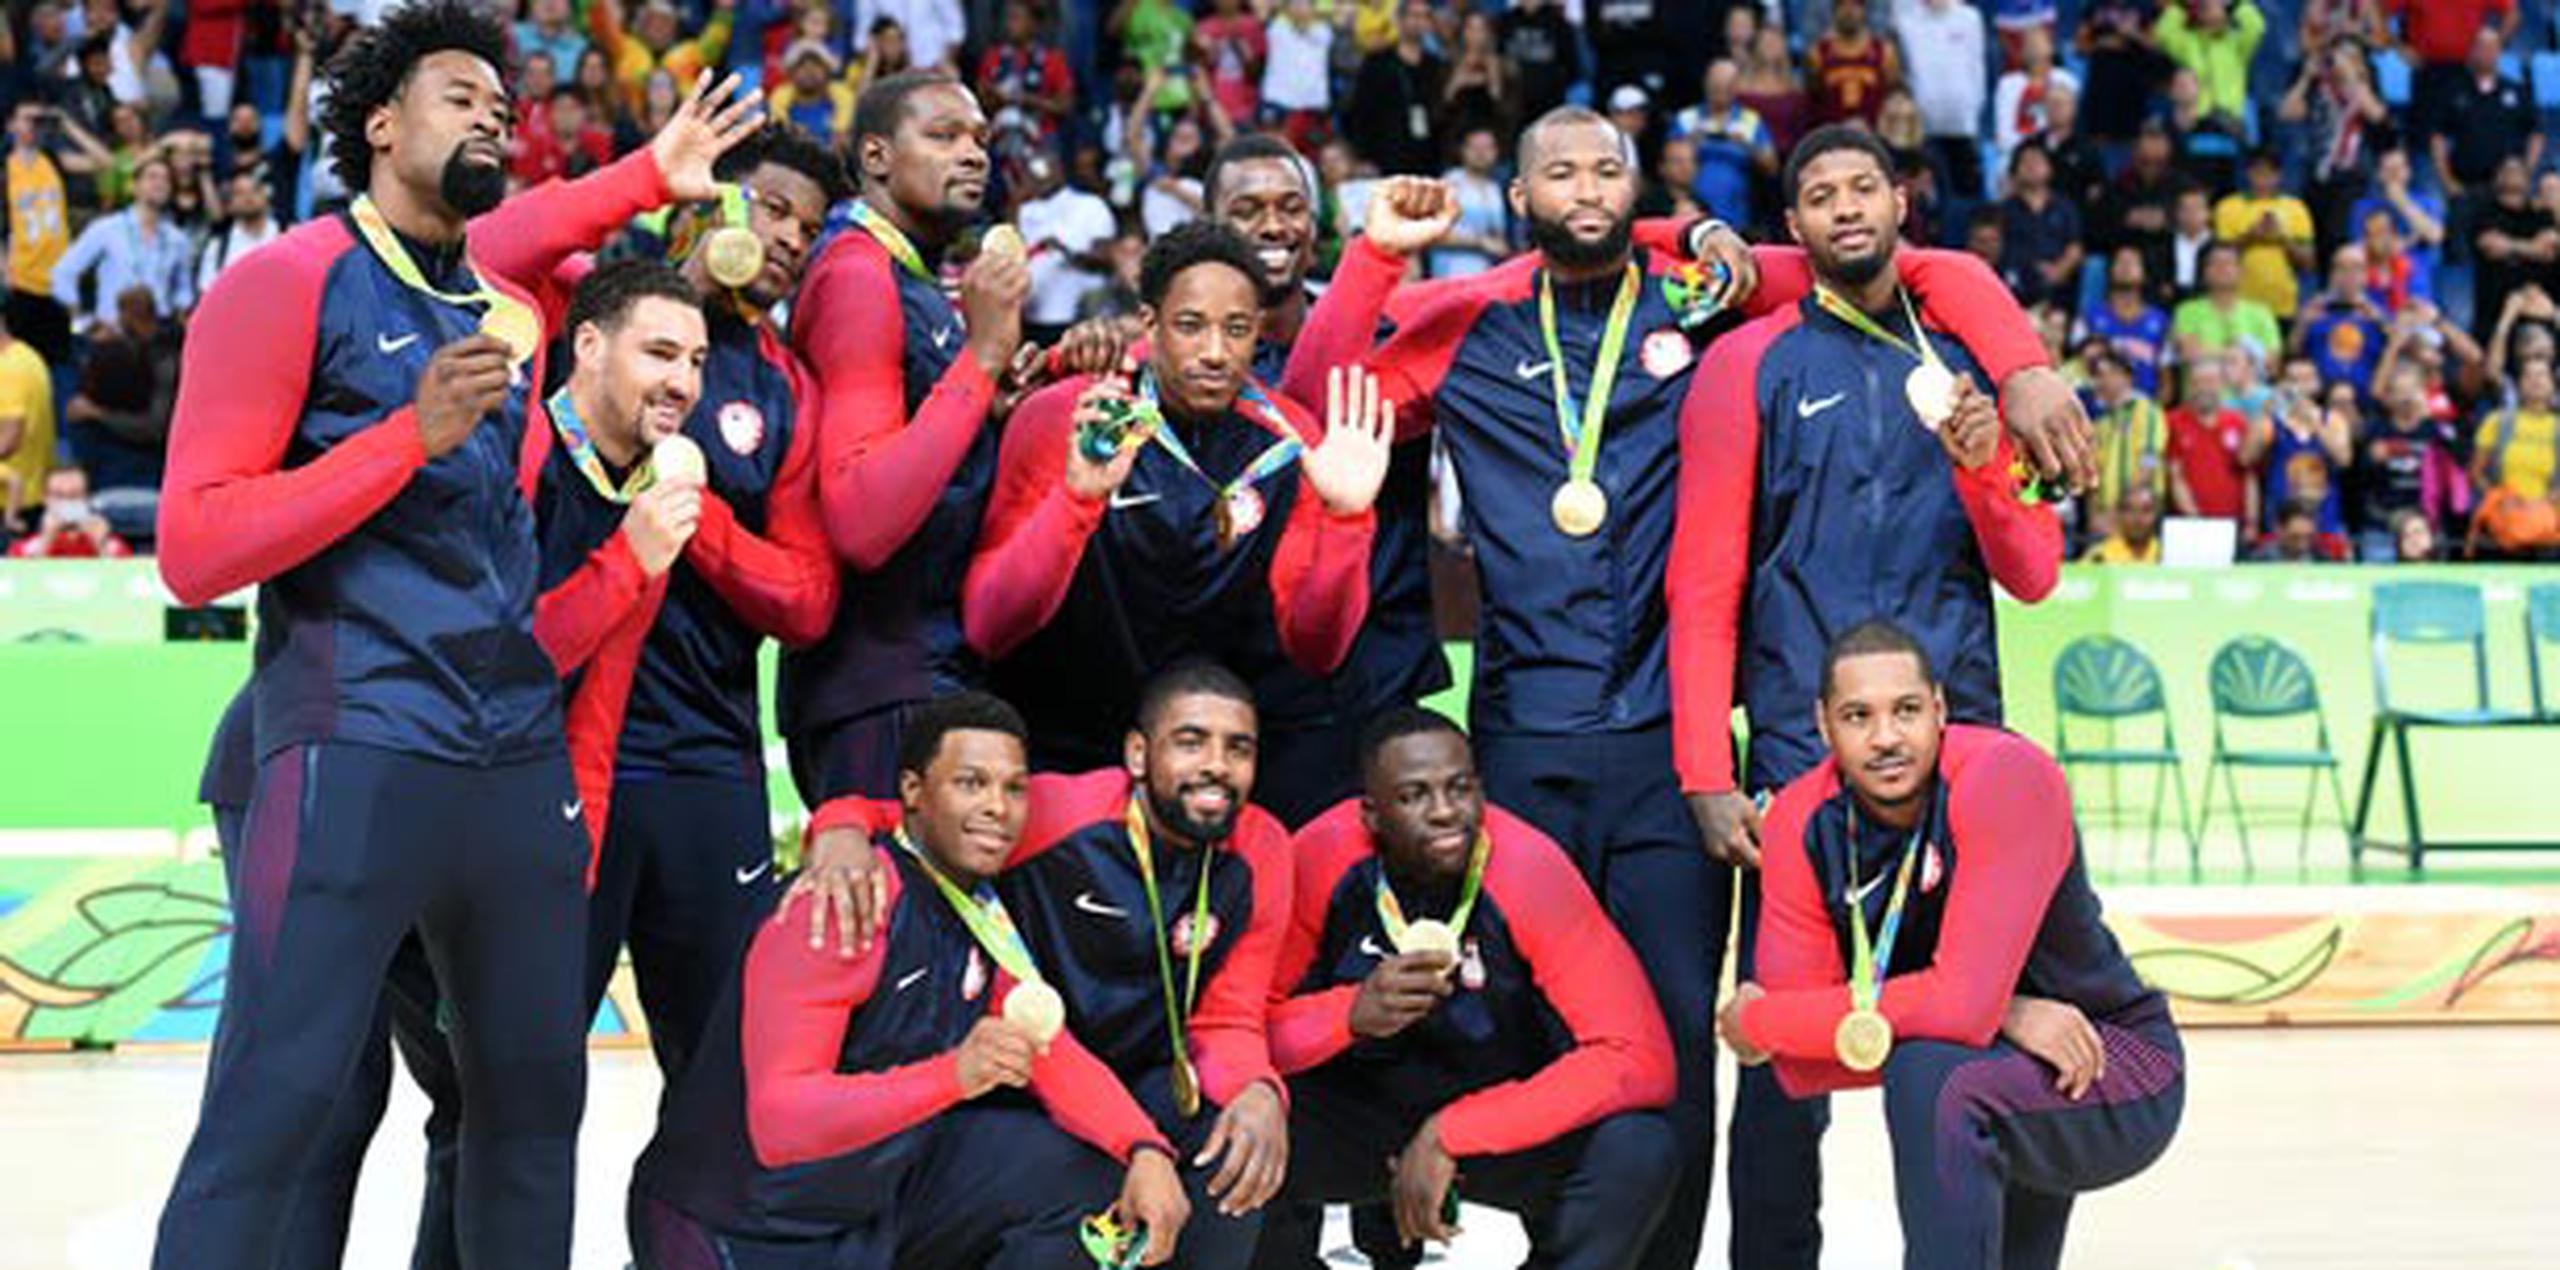 Los integrantes del equipo de baloncesto de los Estados Unidos celebran con su medalla de oro. (andre.kang@gfrmedia.com)
